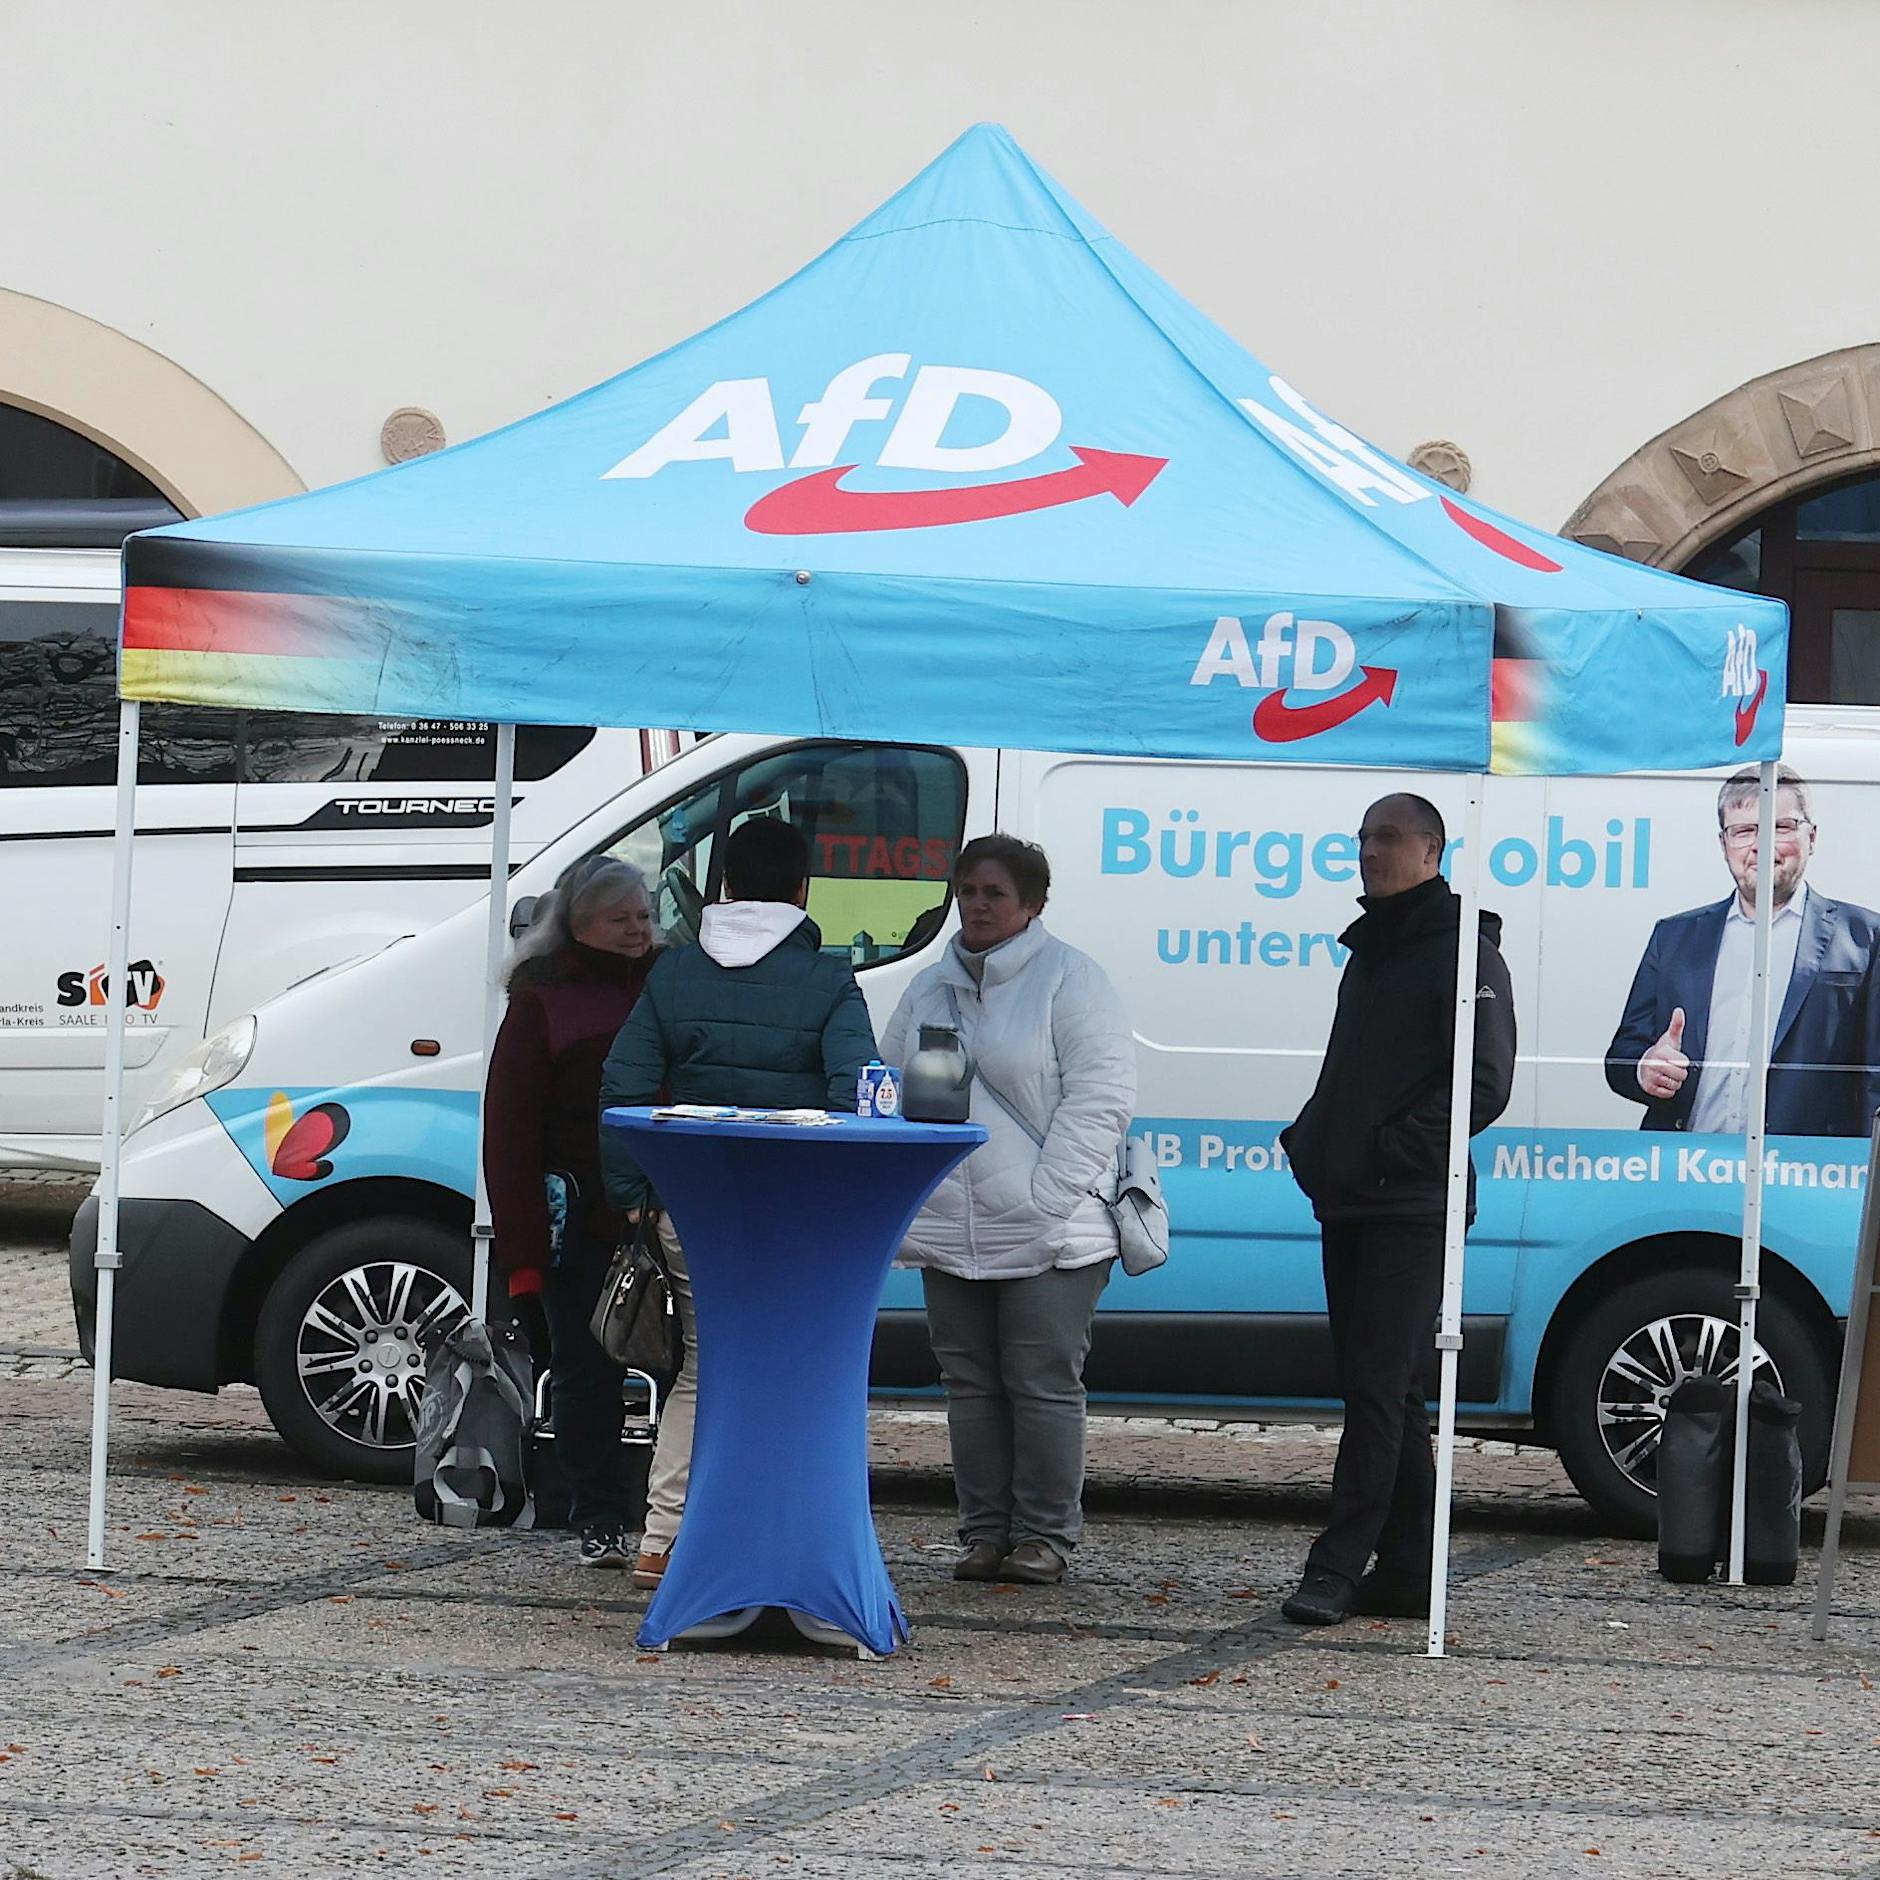 Nach Attacke auf Matthias Ecke: Wahlkampfstand der AfD in Dresden angegriffen